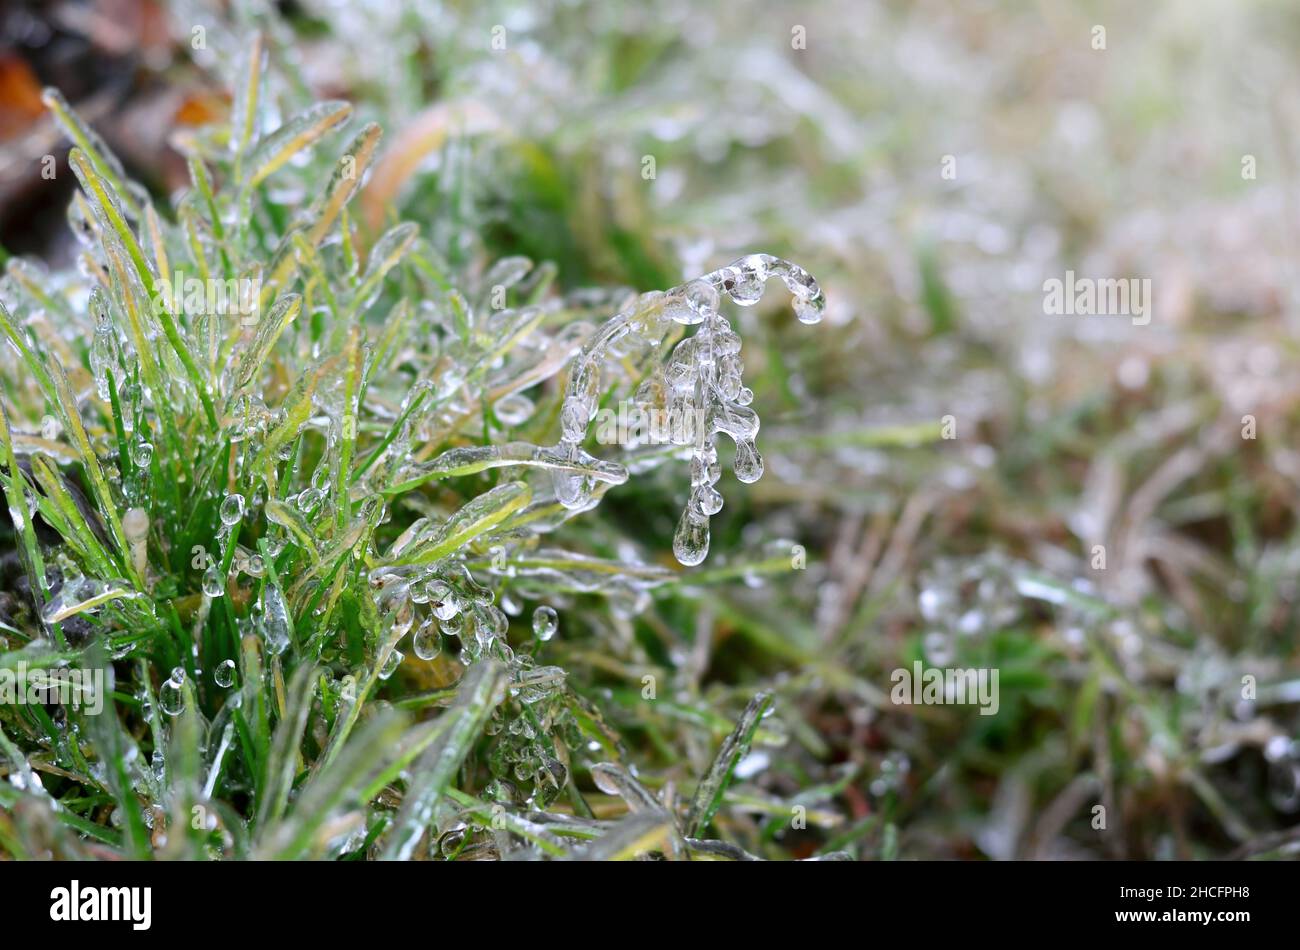 Eisiger Regen bedeckte im Spätherbst oder frühen Winter ein grünes Gras. Effekt der atmosphärischen Vereisung. Stockfoto